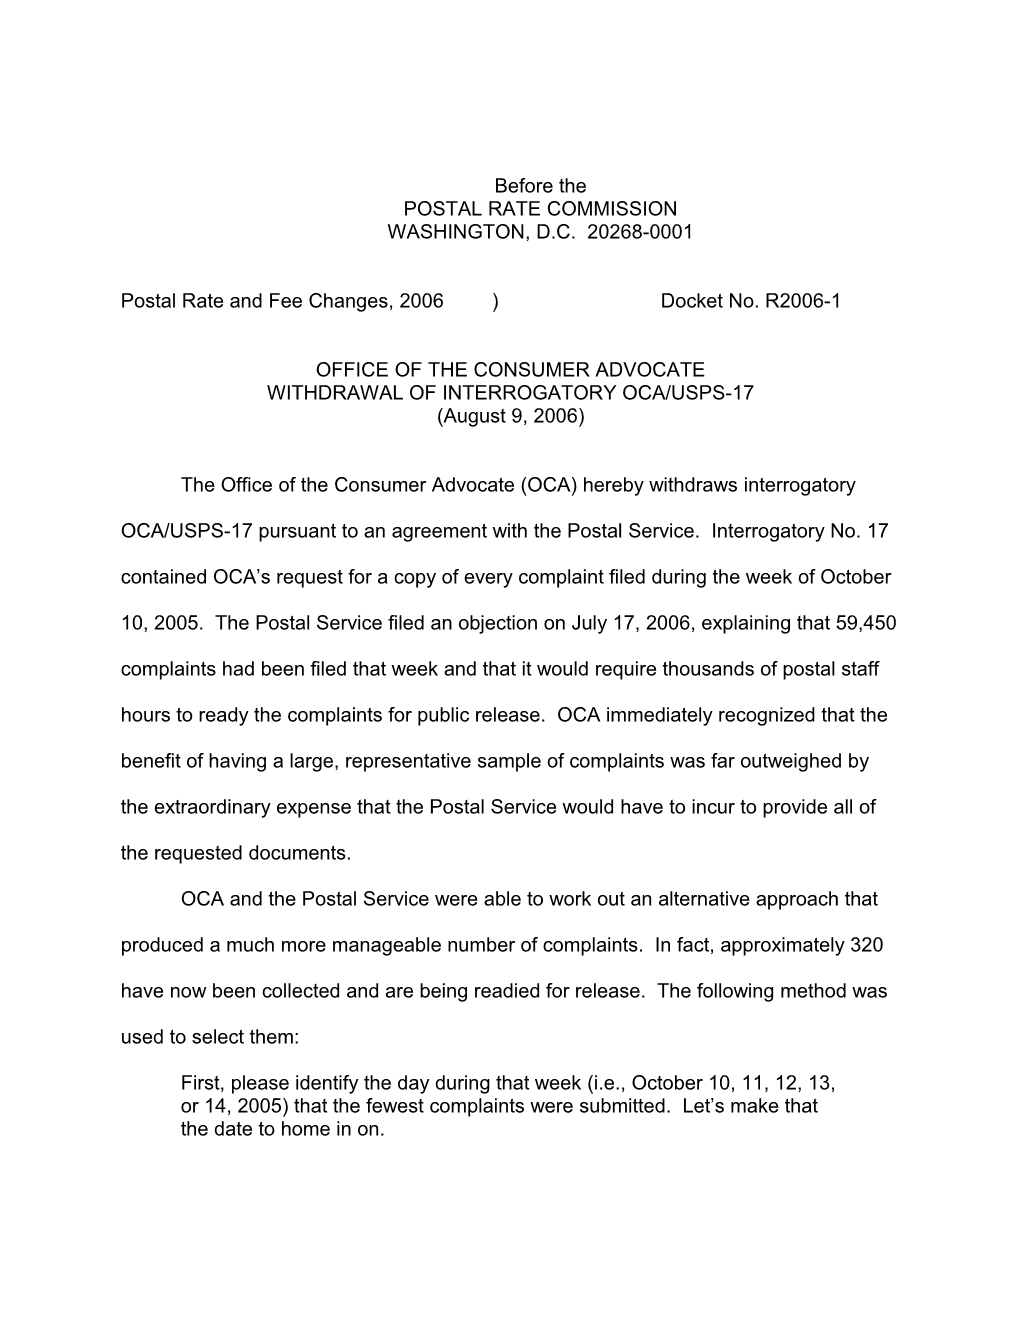 OCA Withdrawal of Interrogatory OCA/USPS-17Docket No. R2006-1